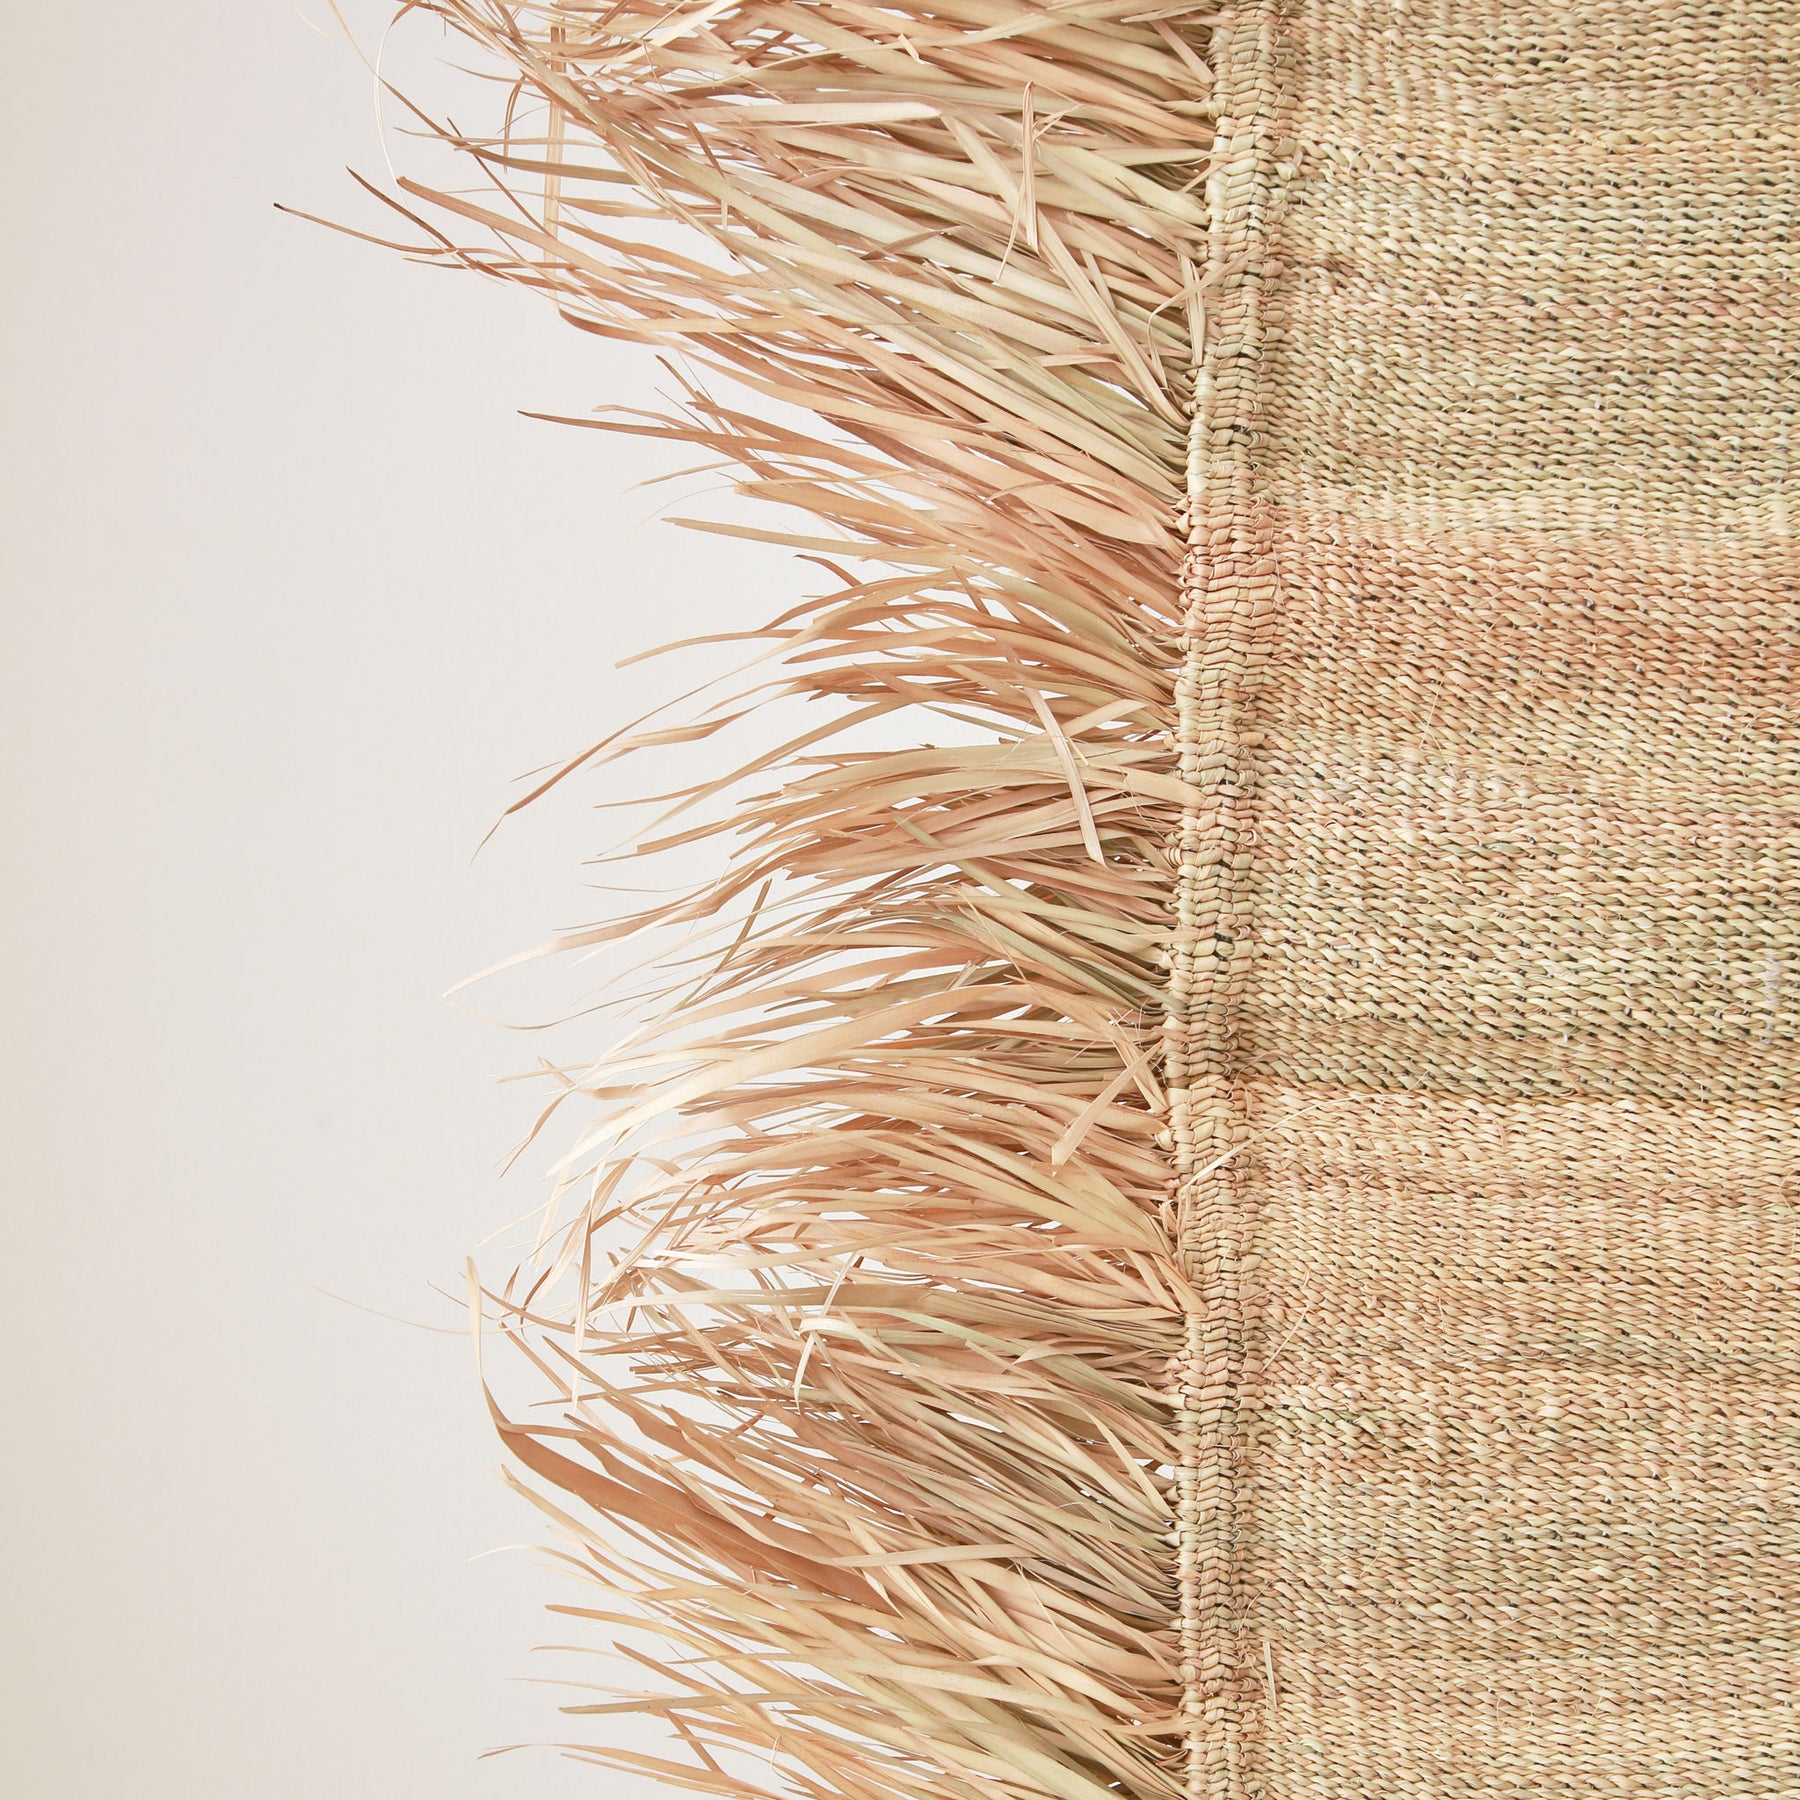 tappeto stuoia hassira senza ricami intrecciata con paglia di palma con un frangia laterale in paglia fotografata nel dettaglio